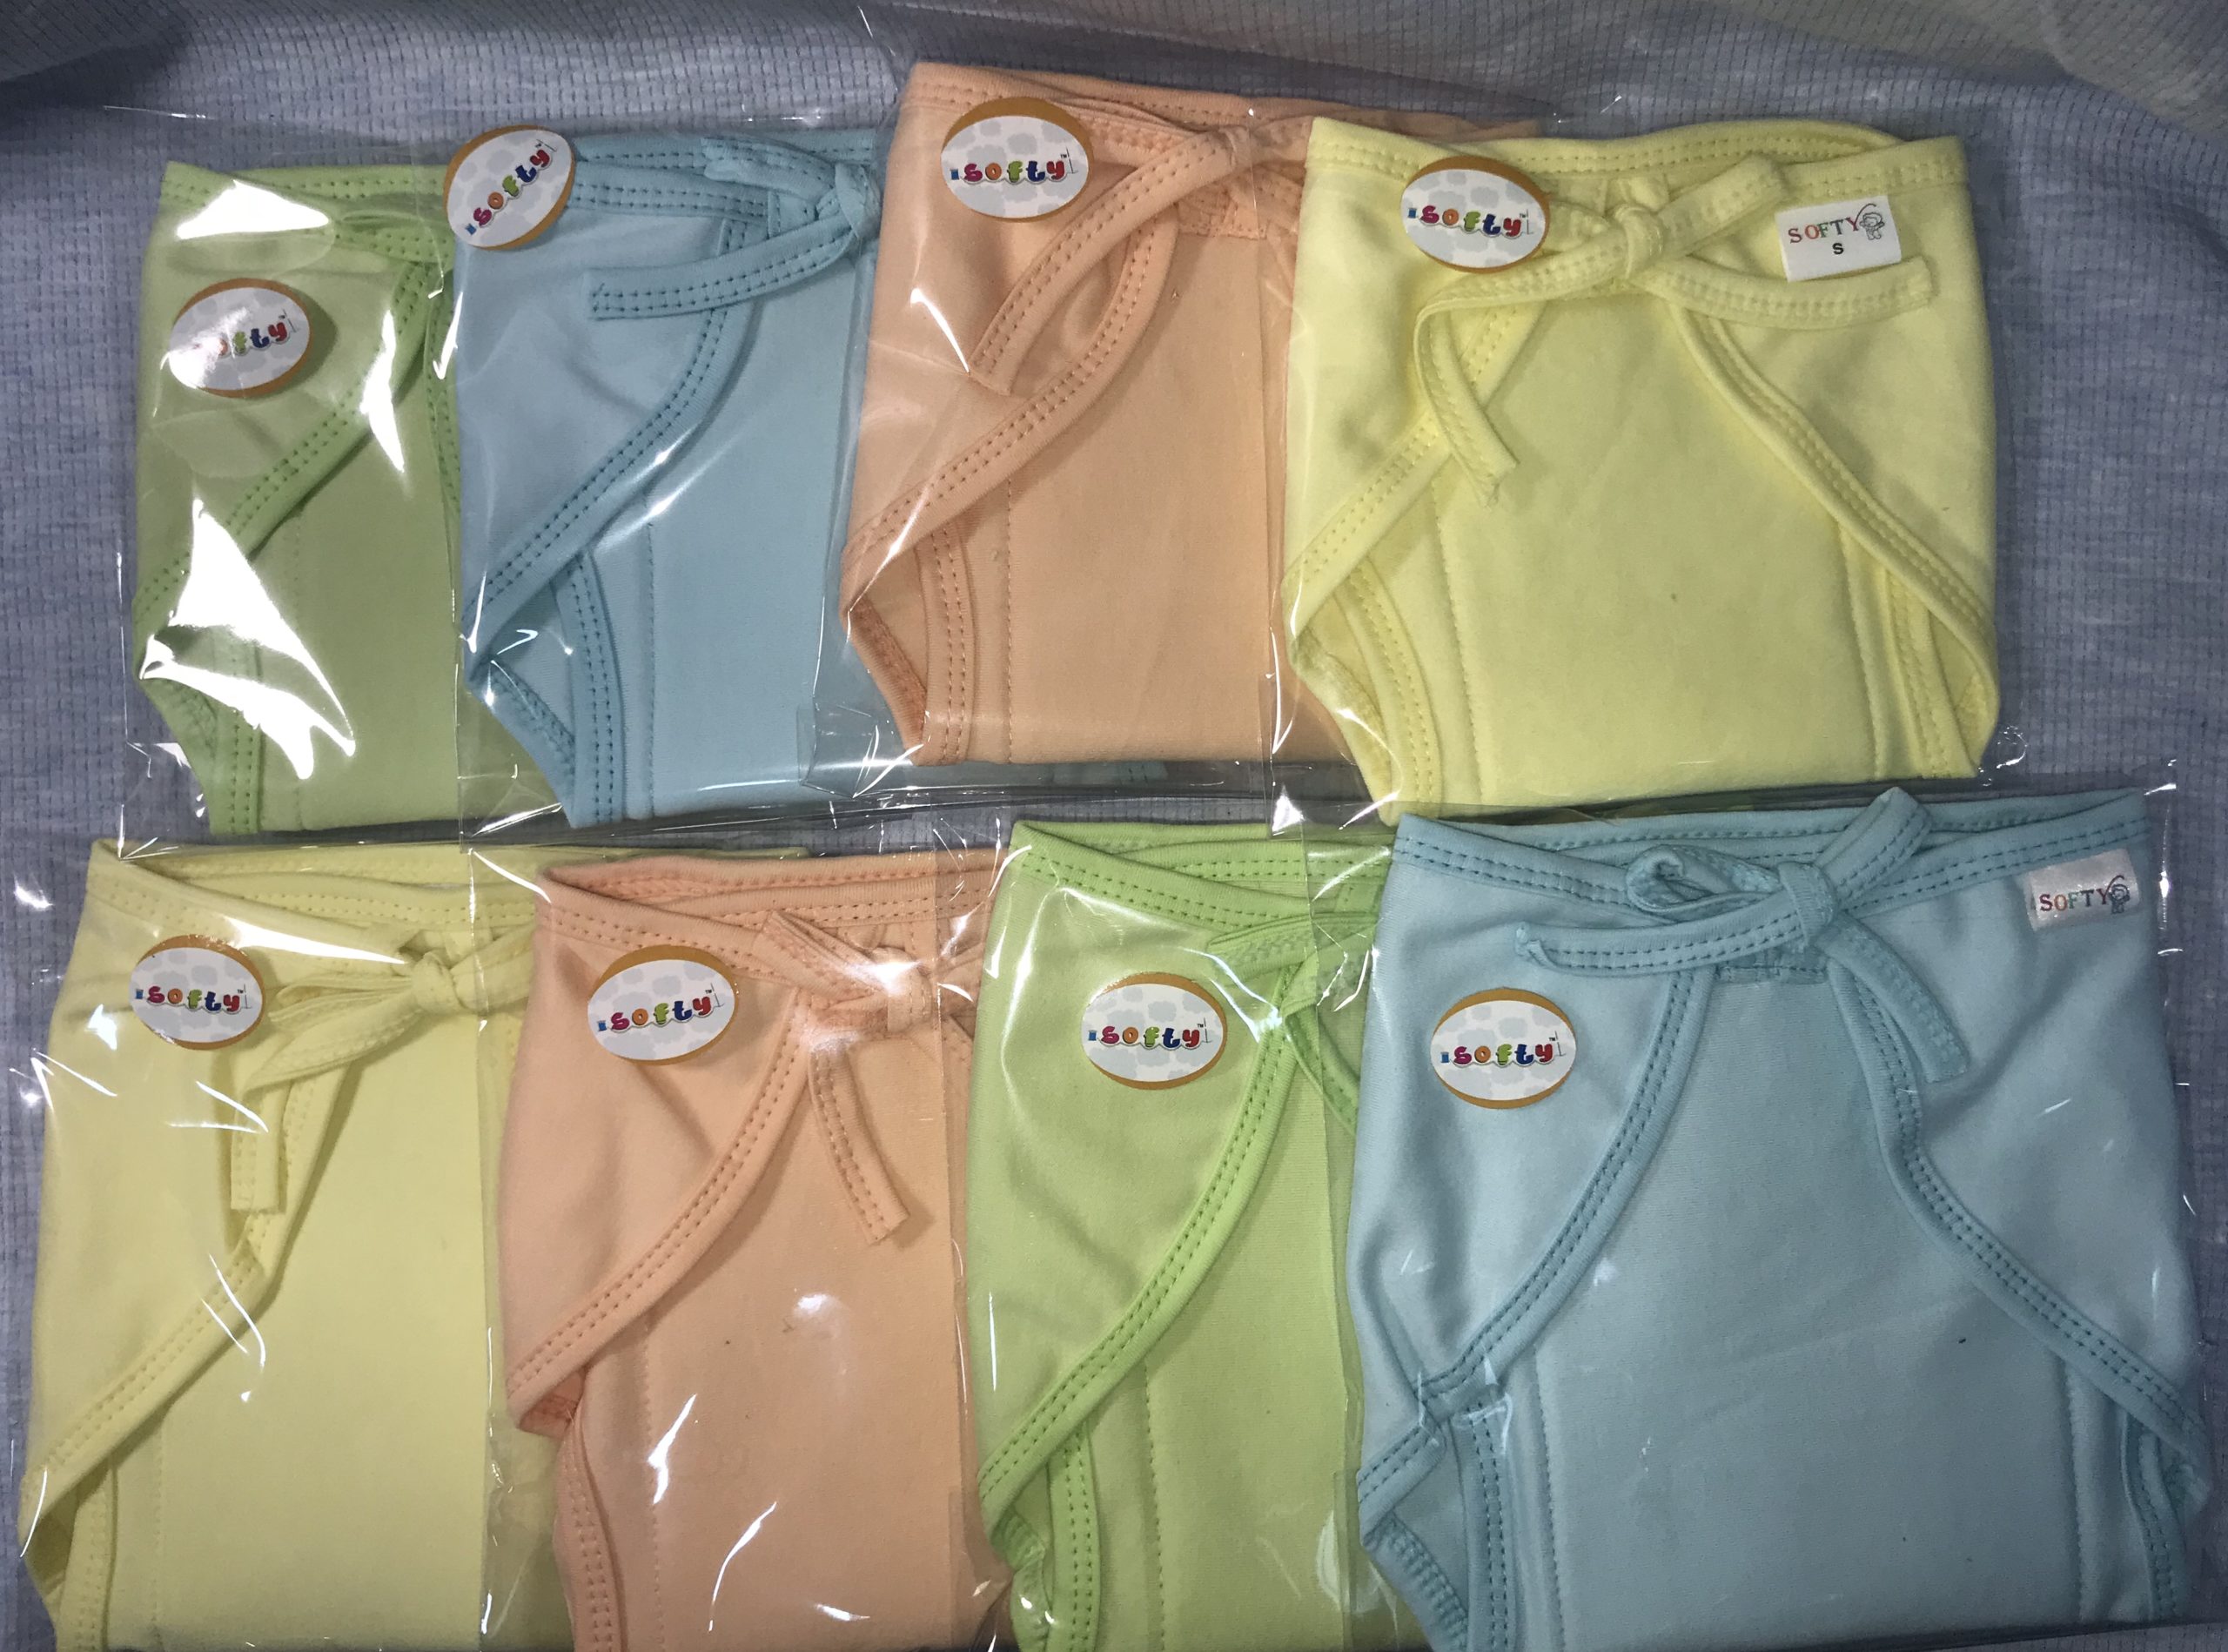 Nappy, Plain Dyed Fabric, Size – Large